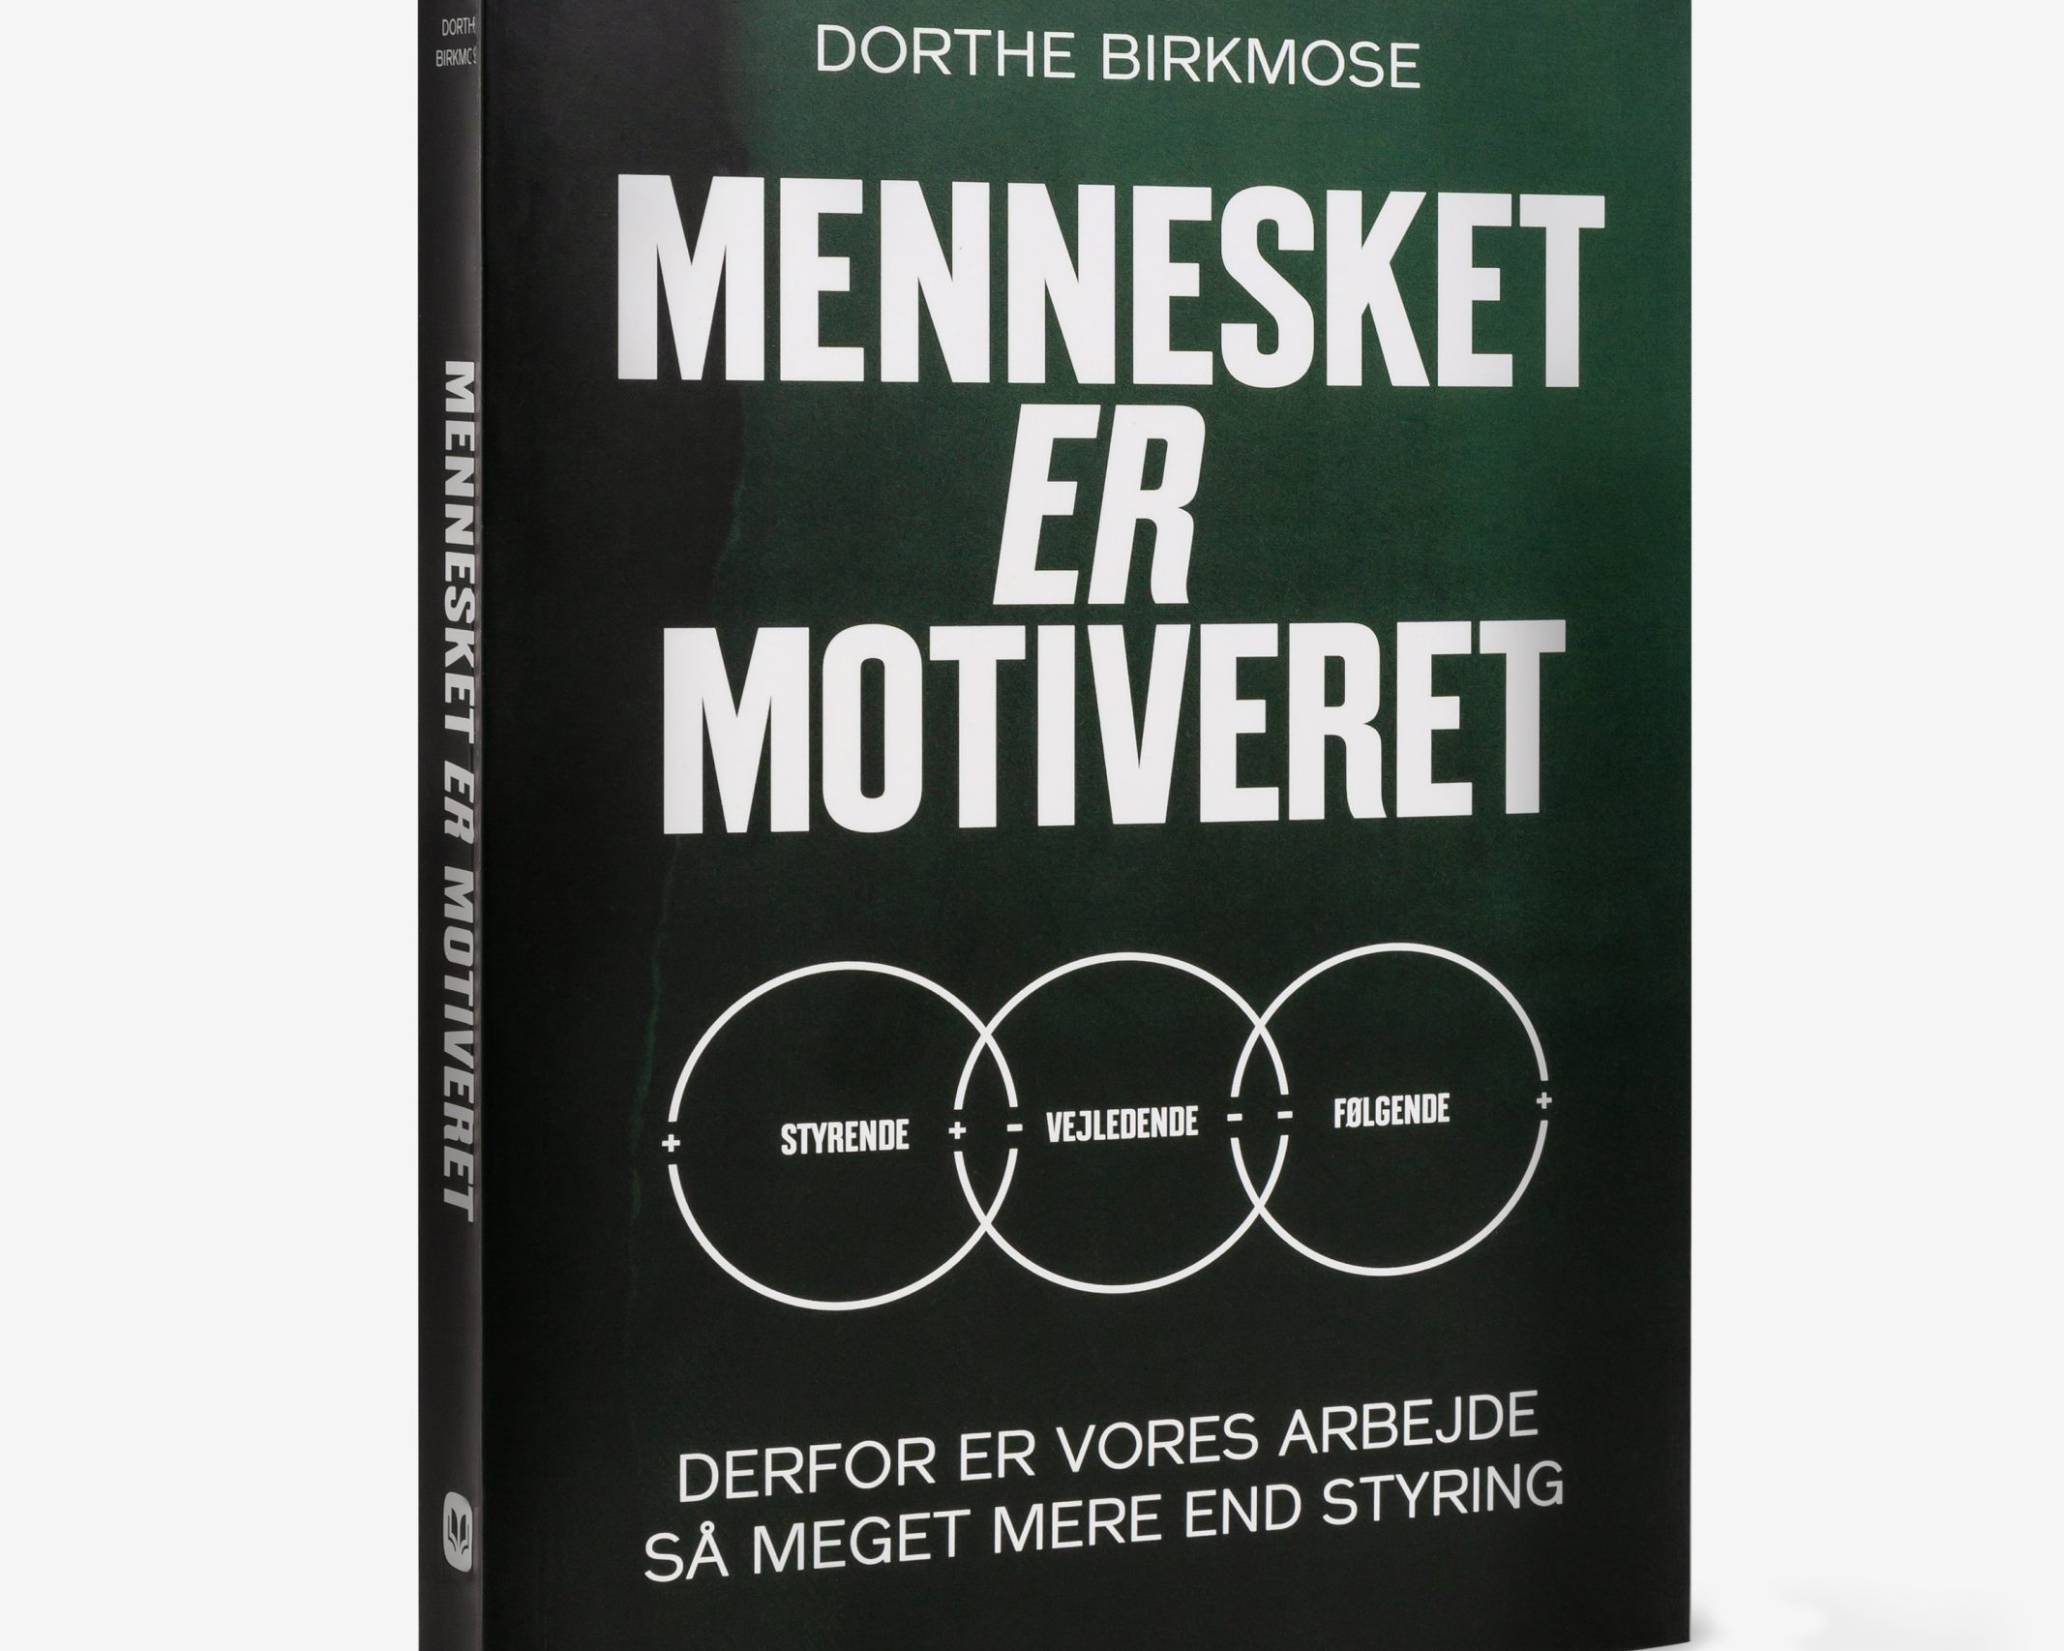 Vant til Post Bitterhed Faglig ledelse Arkiv - Dorthe Birkmose